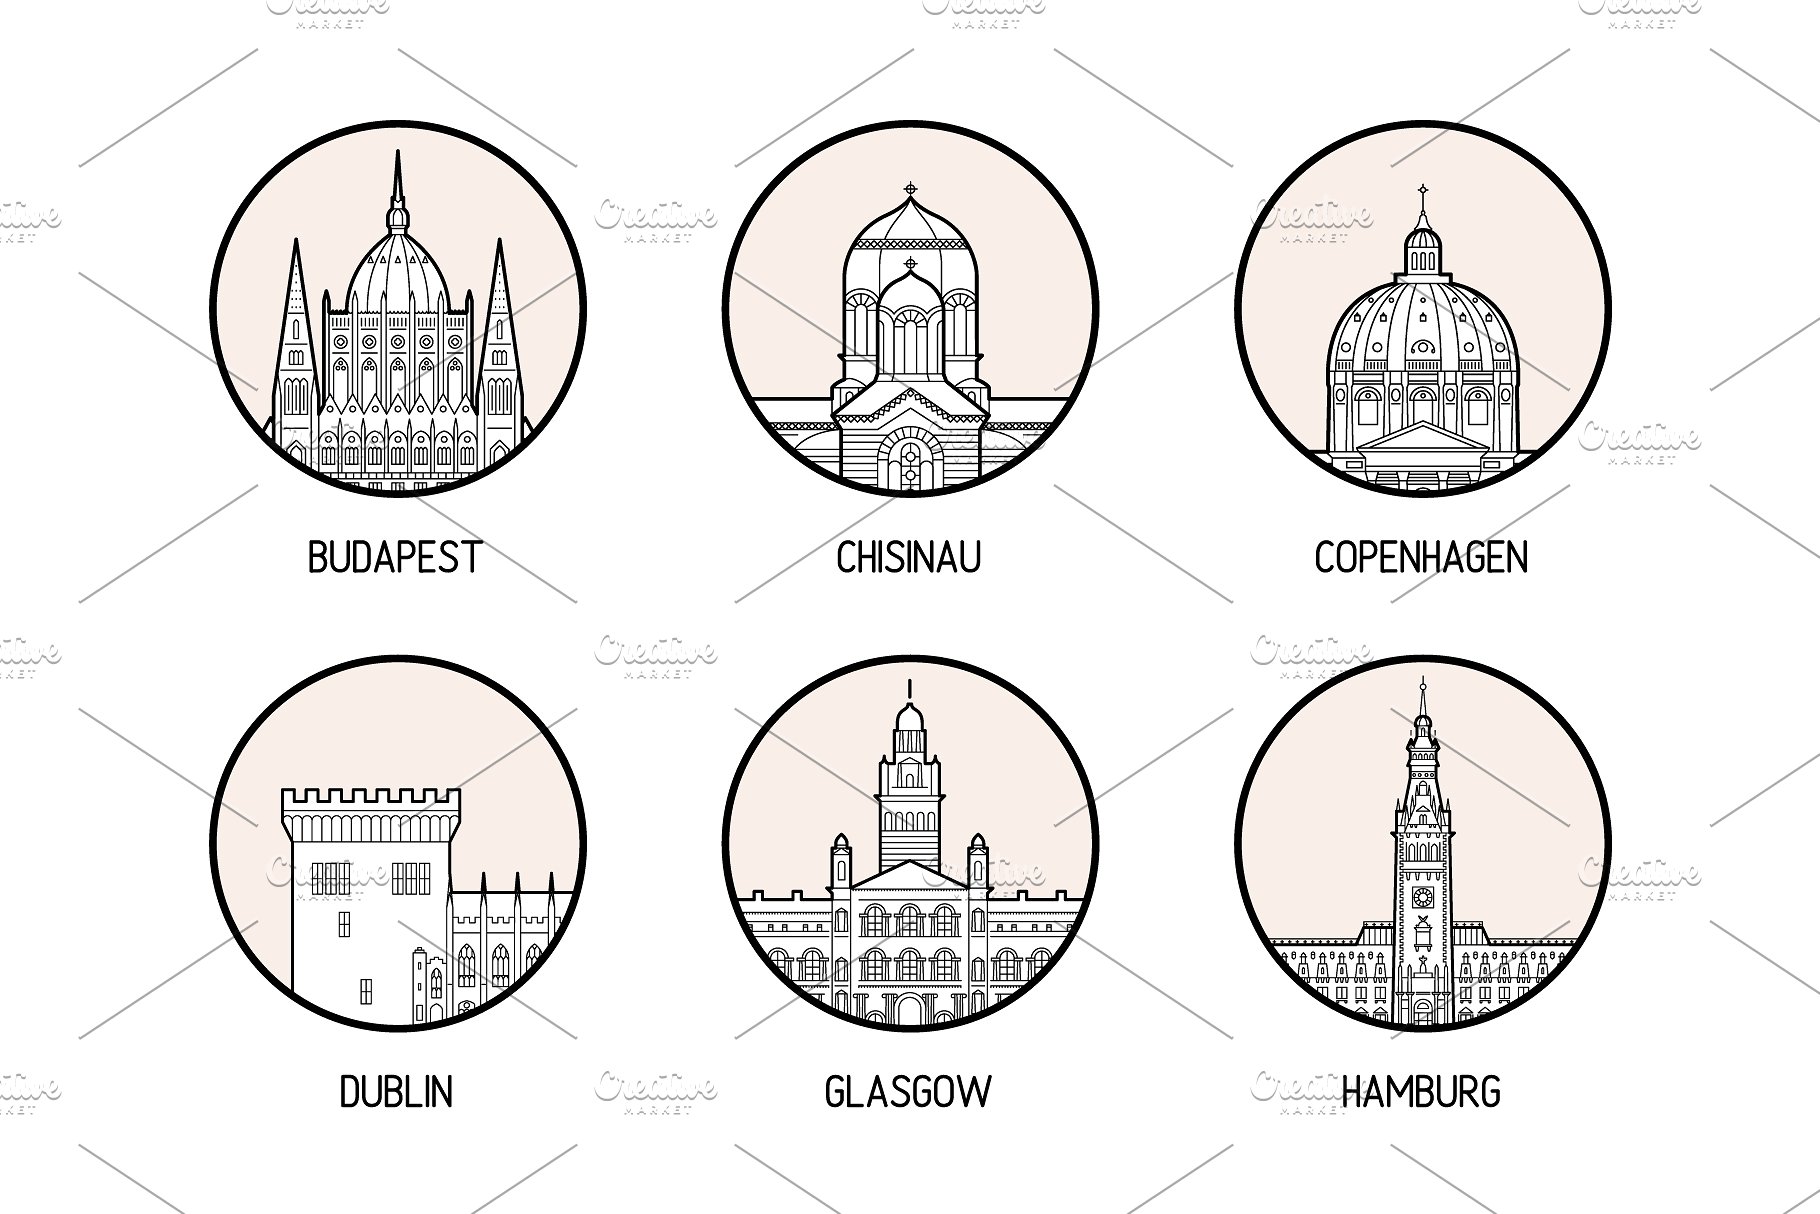 30个欧洲城市的徽章图标集合 Icons of 30 European cities插图3